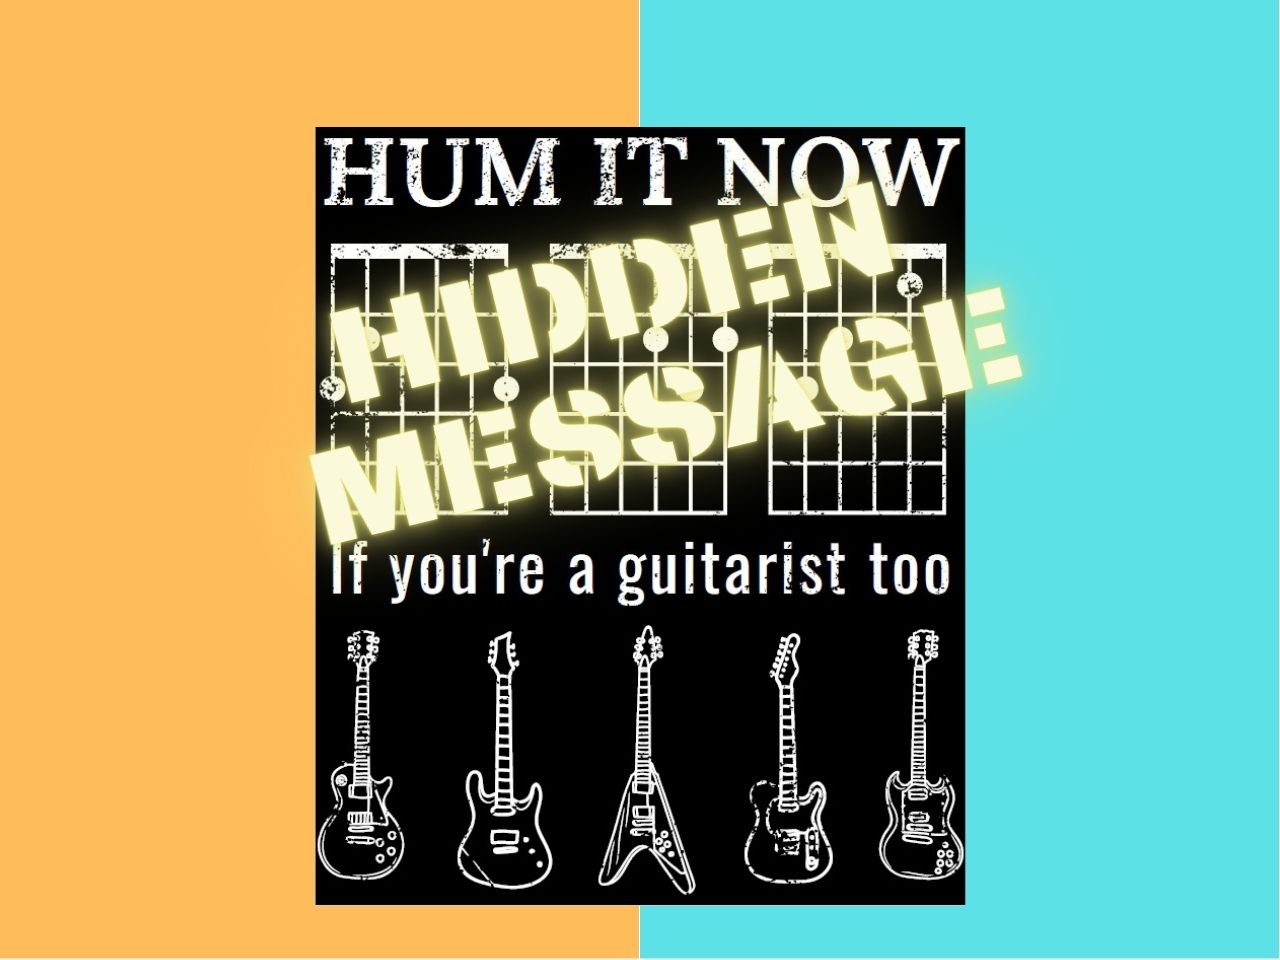 hidden message Interactive T-shirt for guitarists